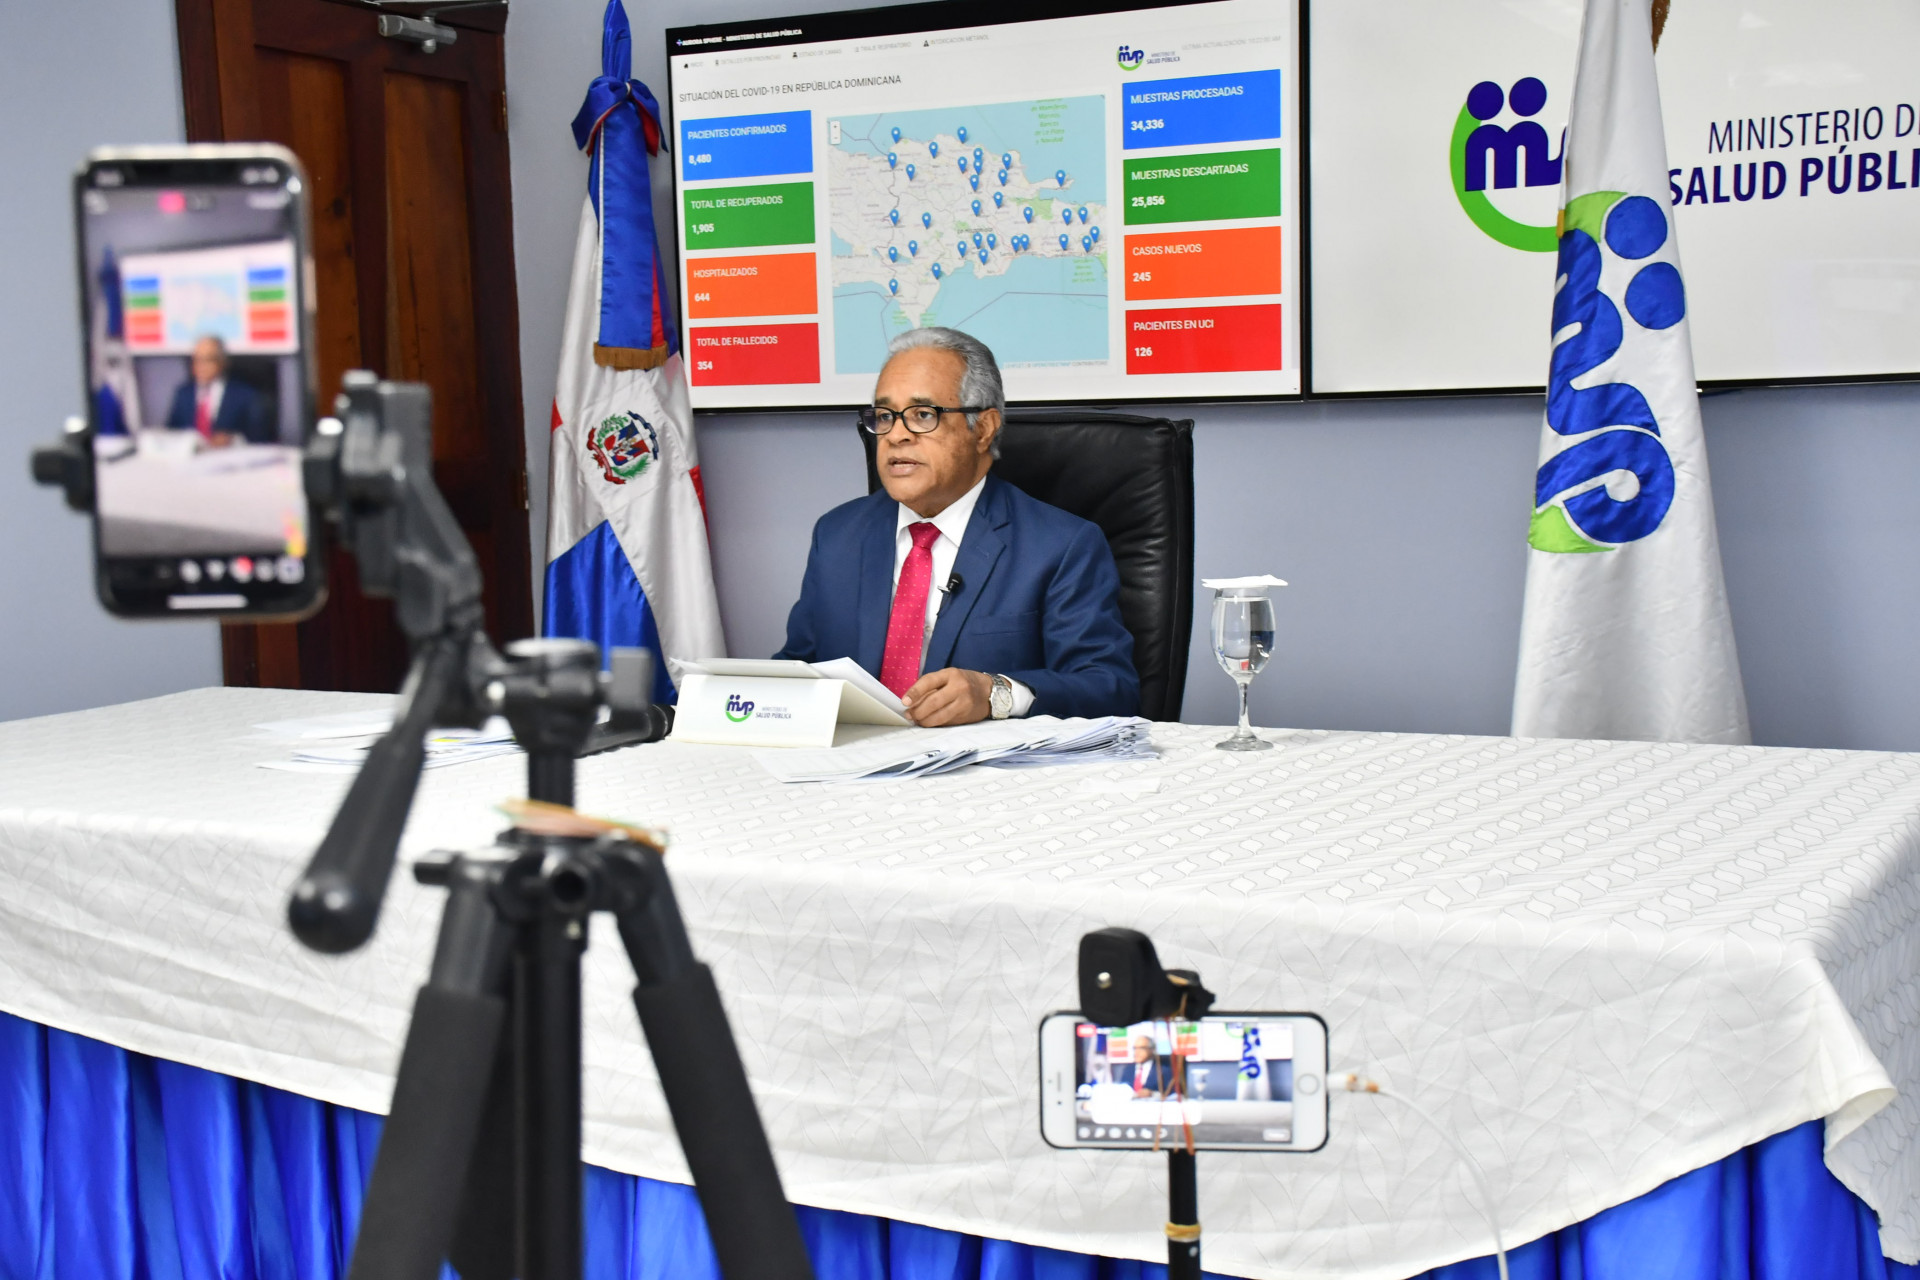 REPÚBLICA DOMINICANA: Ministro de Salud insta a mantener medidas preventivas en segunda fase desescalada; anuncia puesta en marcha residencia epidemiología